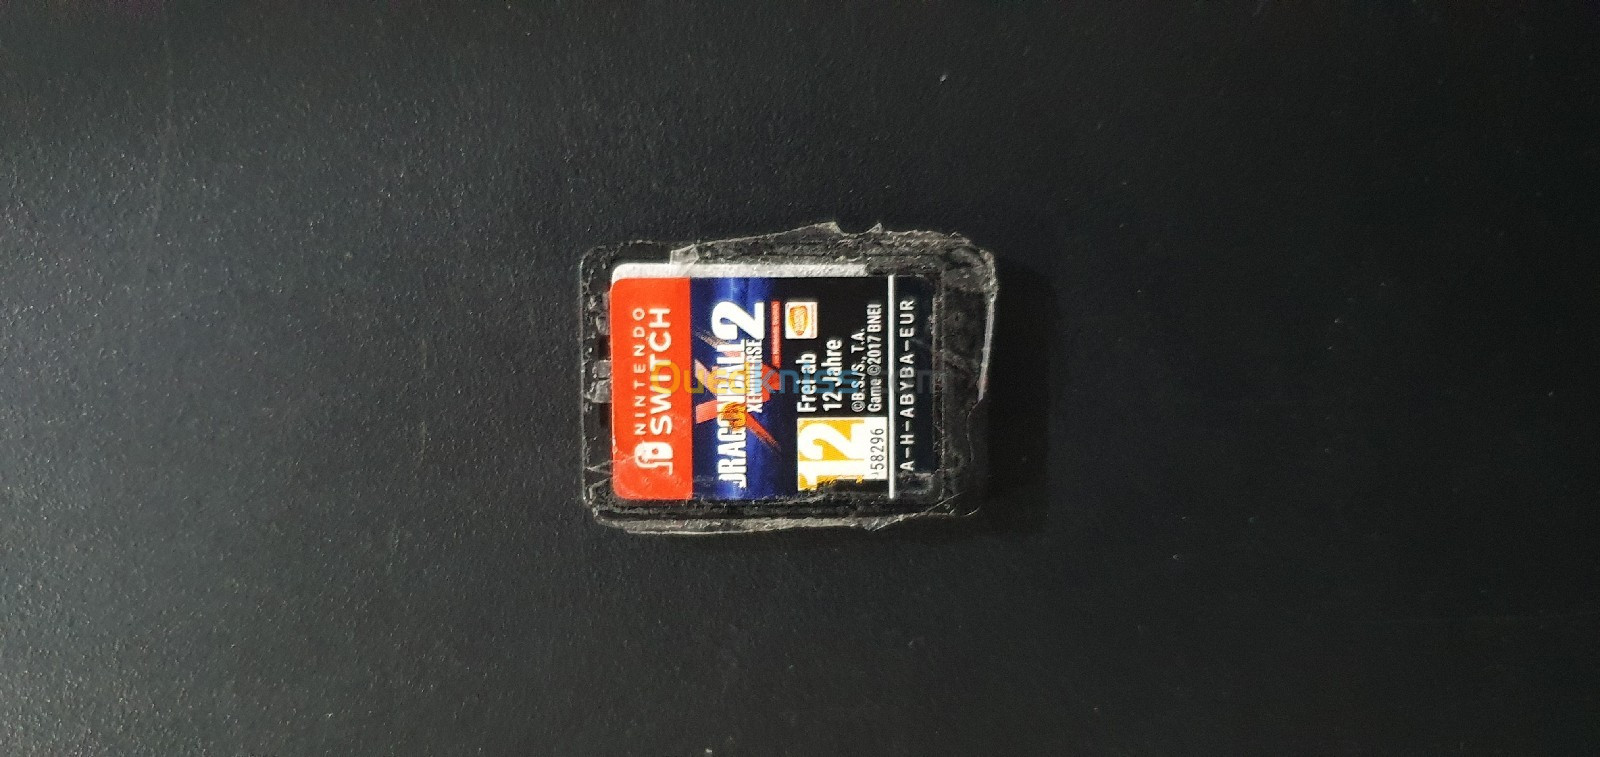 Cassettes nintendo switch.  البيع في محل في شلف وسط توصيل متوفر لكل الولايات مع ياليدين 